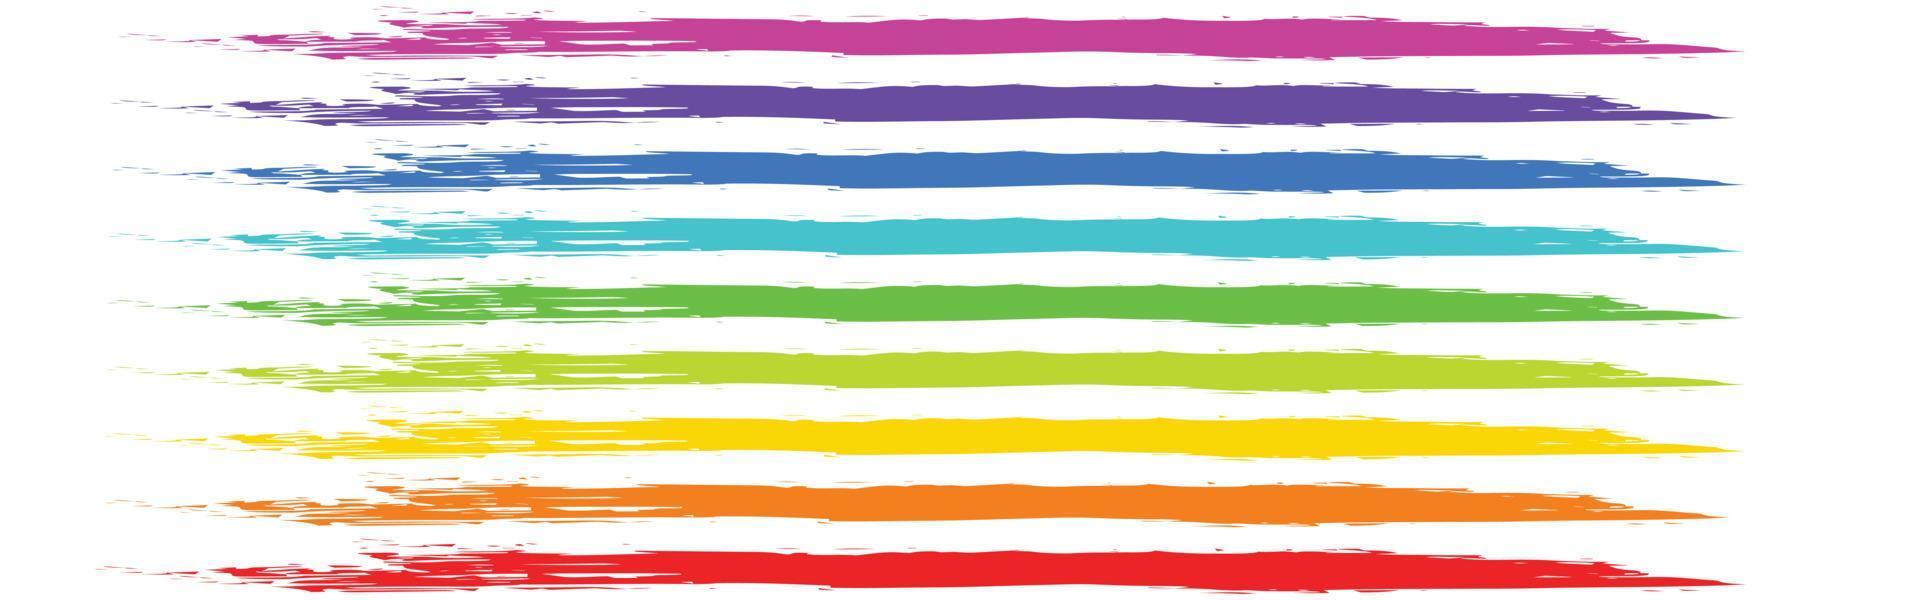 grafica vettoriale astratto sfondo colorato e vivace. questa illustrazione contiene strati lisci di onde d'acqua nei colori dello spettro arcobaleno